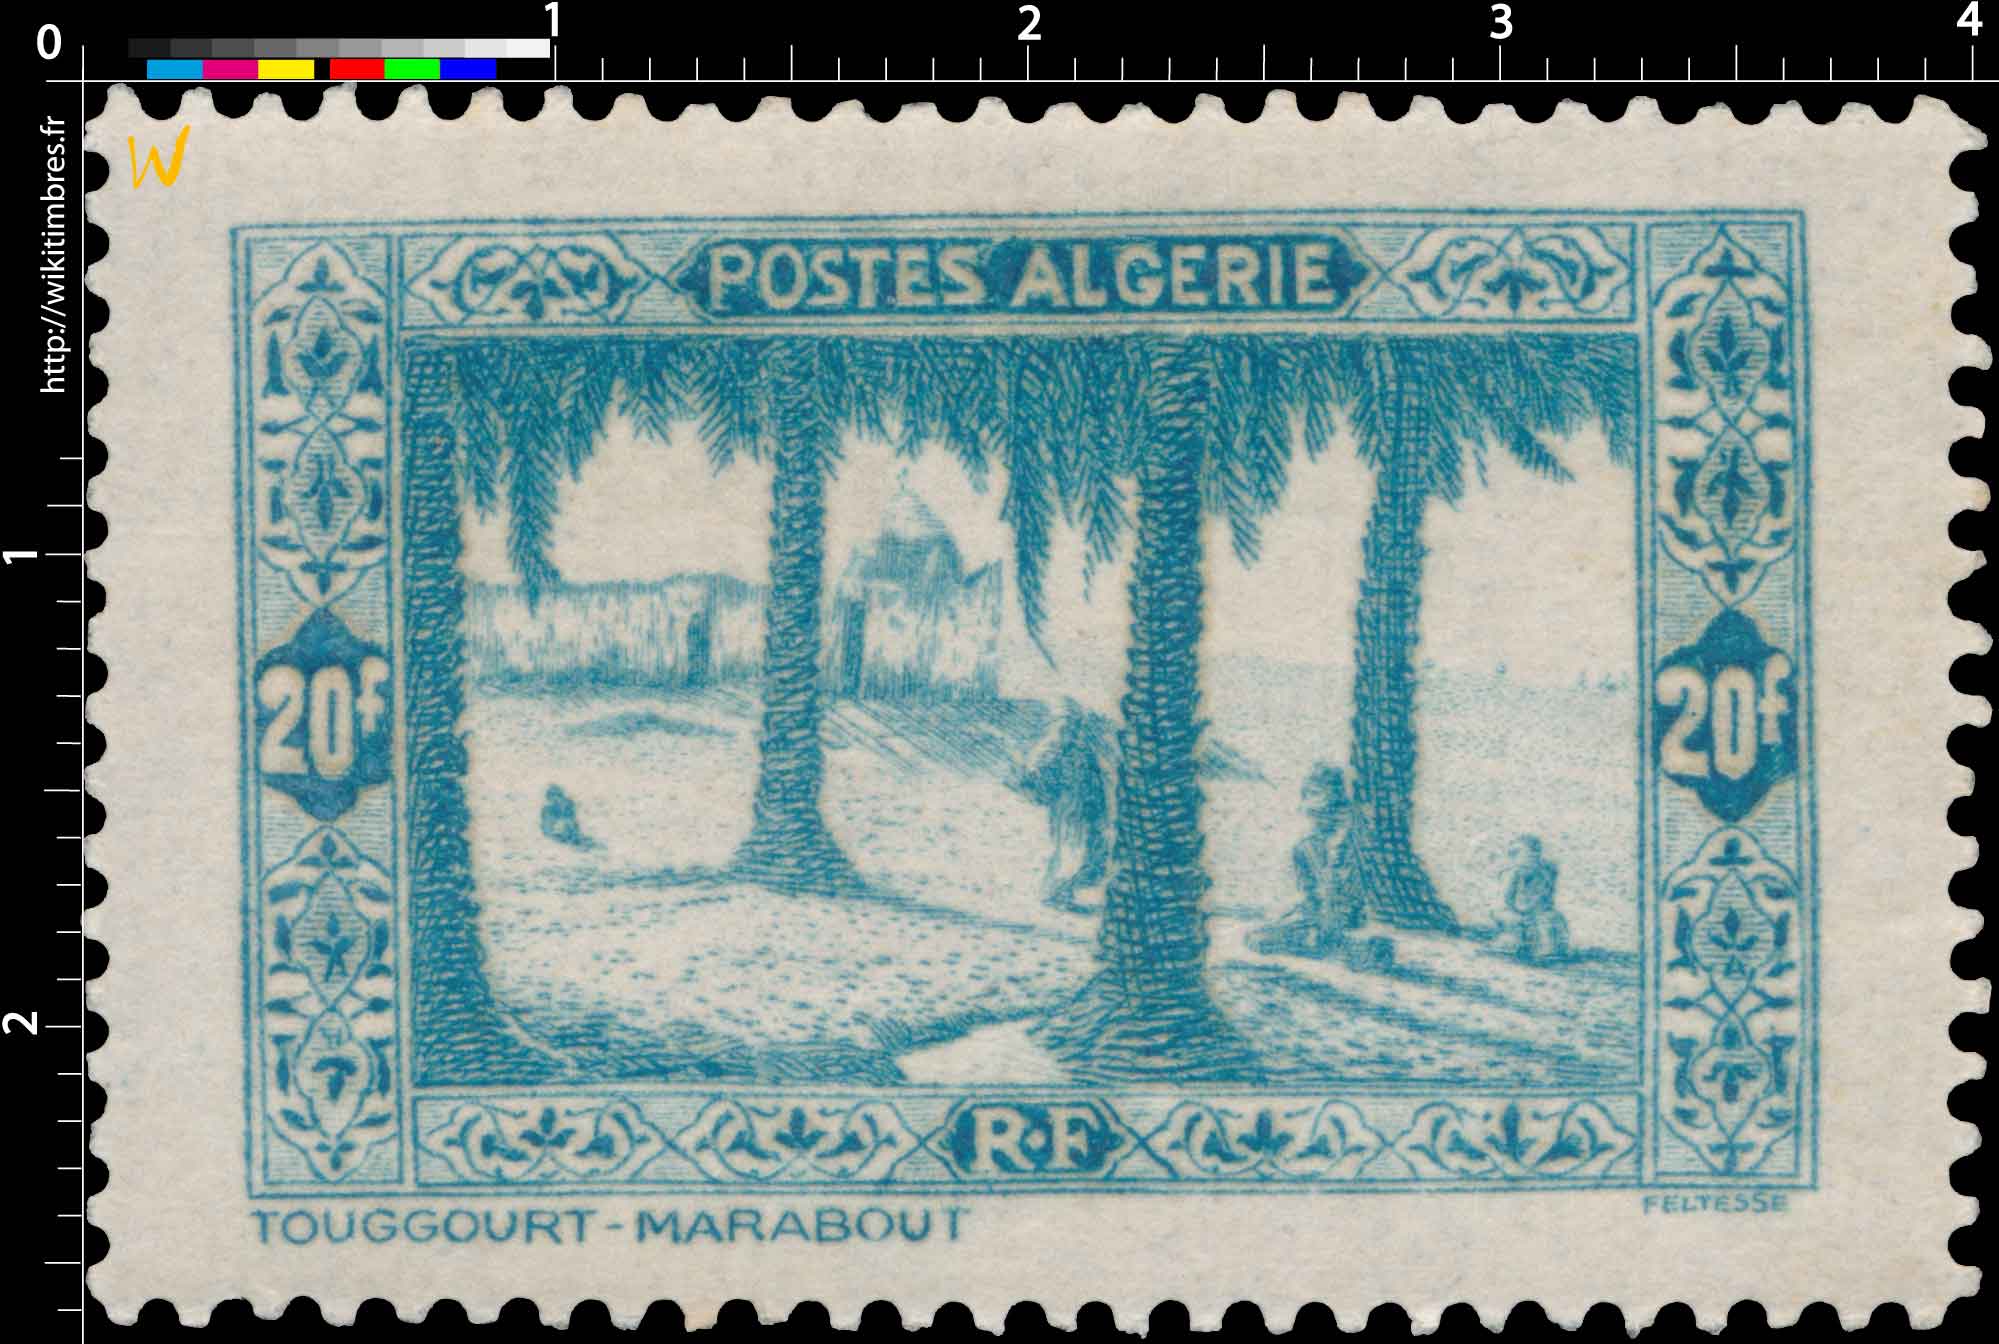 Algérie - Un marabout, à Touggourt